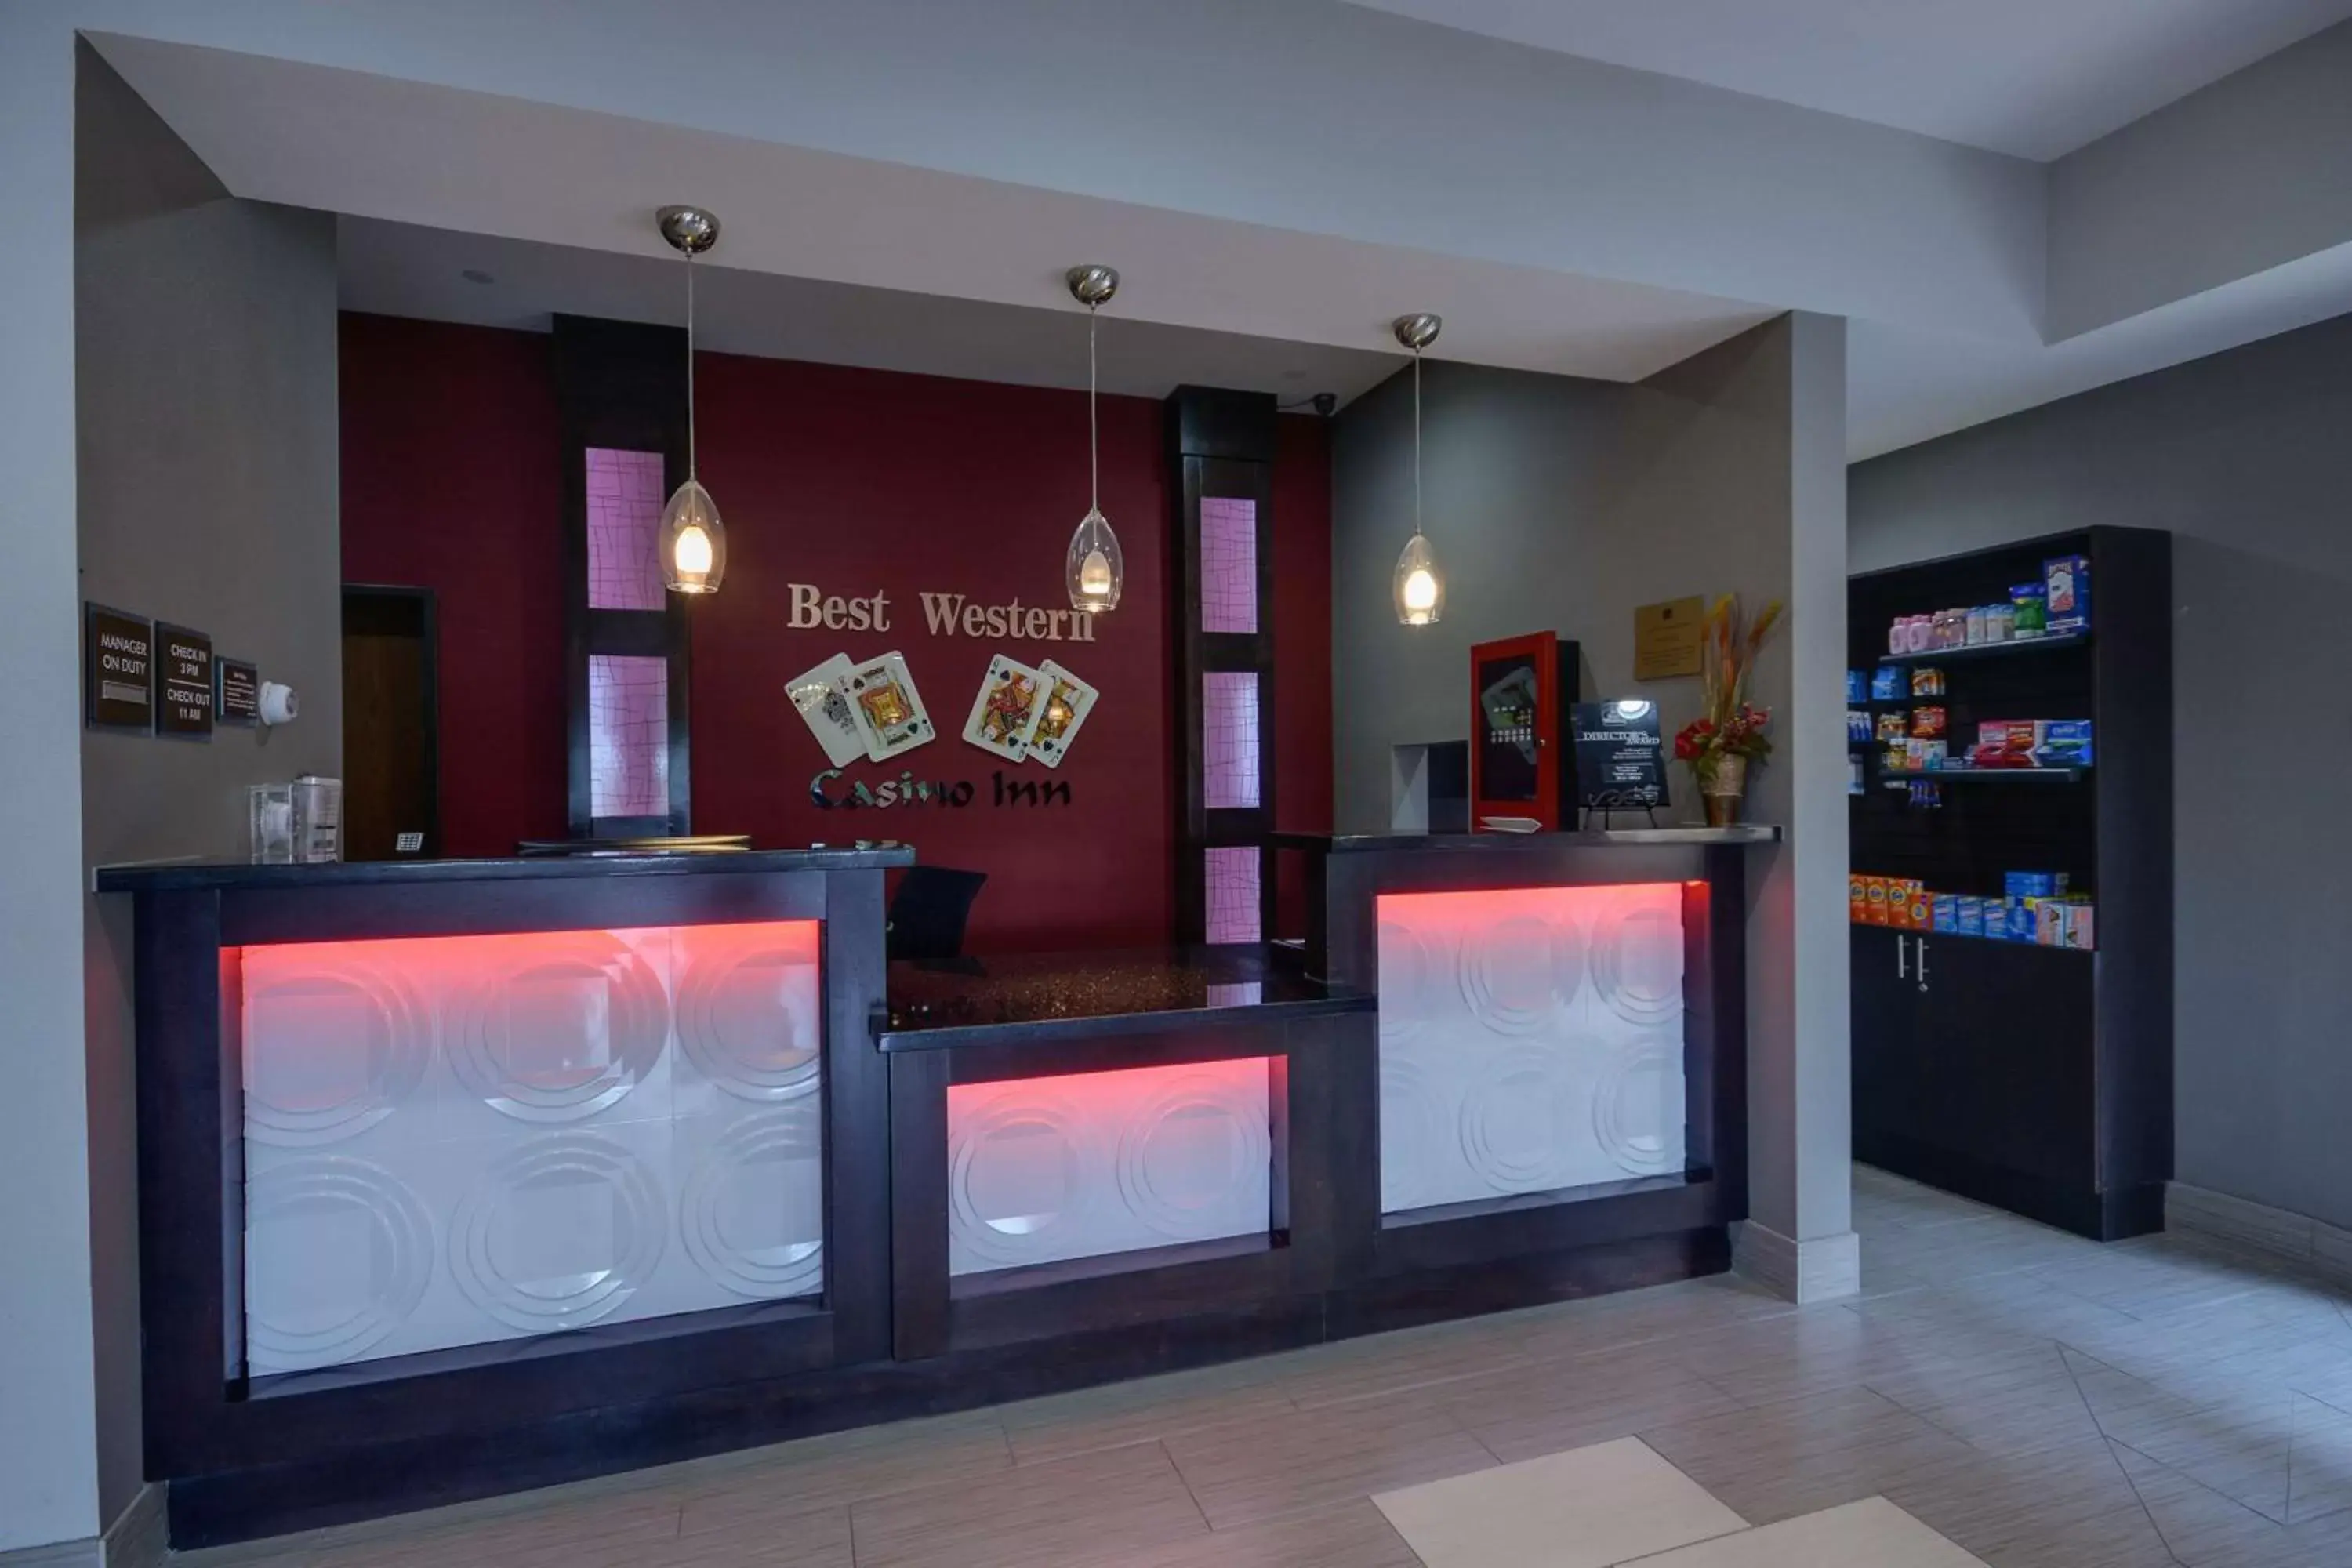 Lobby or reception, Lobby/Reception in Best Western Casino Inn